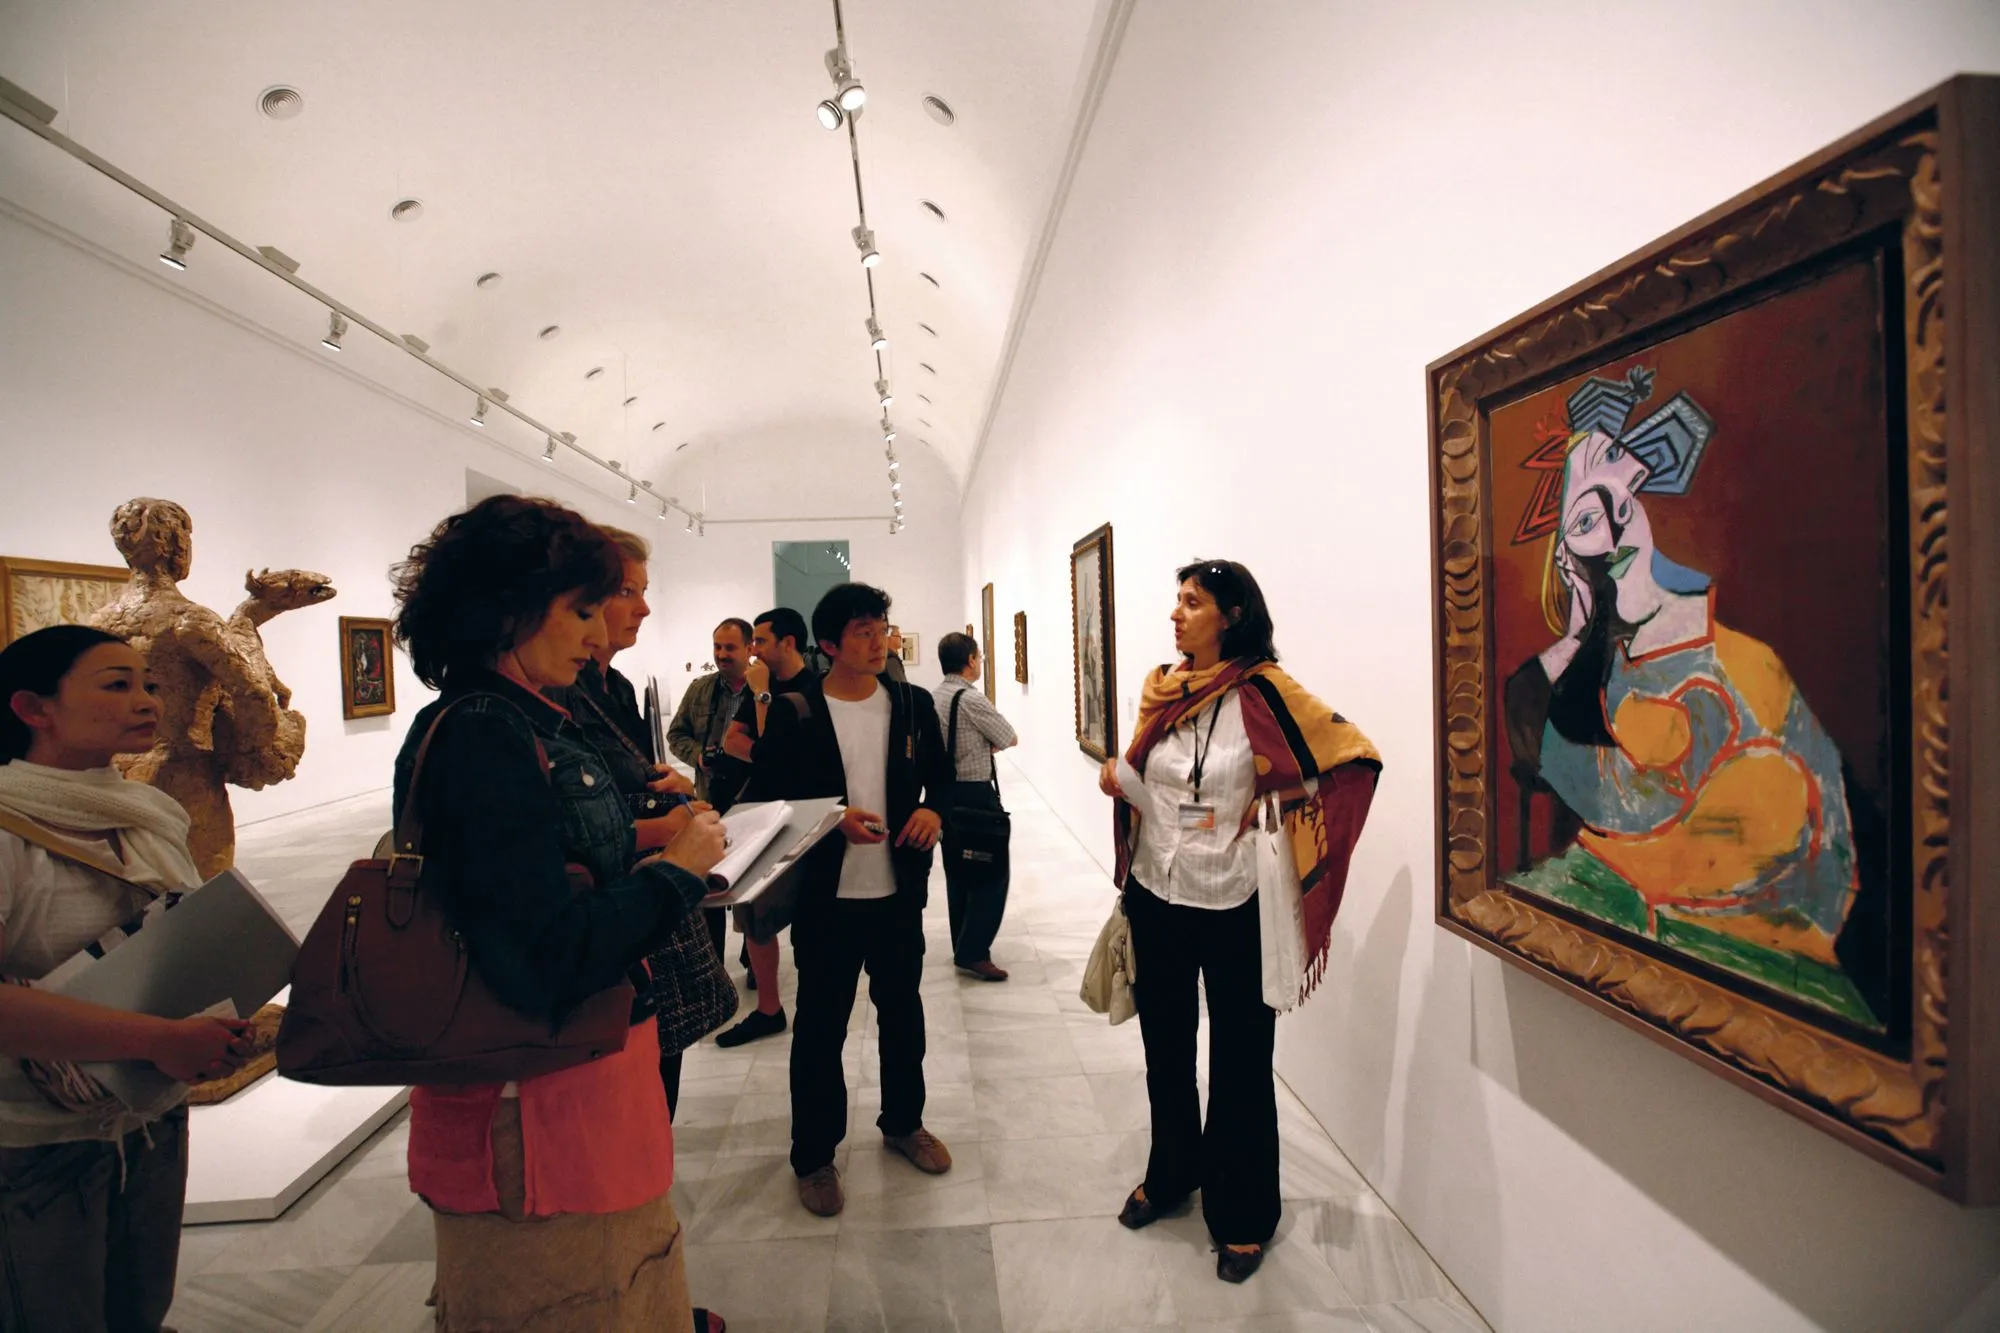 Una guía introduce la pintura de Picasso a un grupo de visitantes  en el Museo Nacional de Arte Reina Sofía, Madrid, 2010.